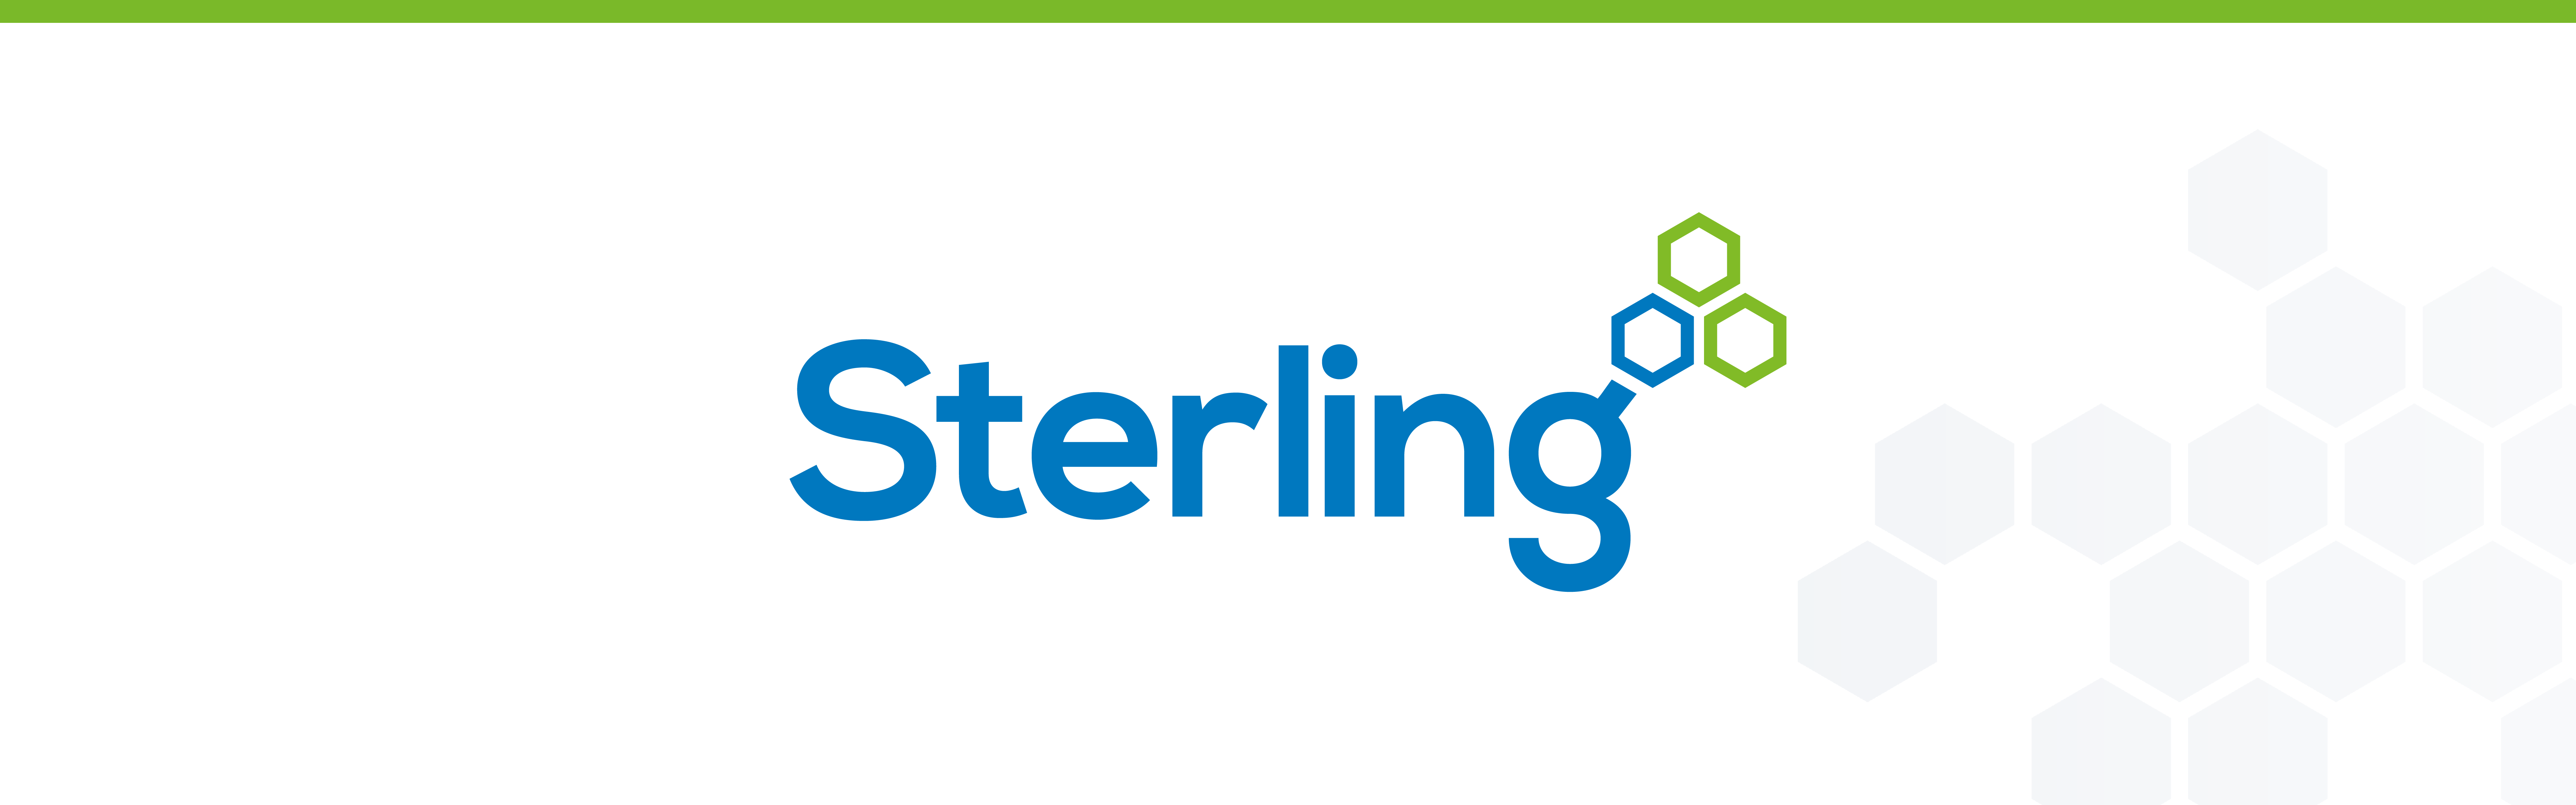 Sterling banner image2